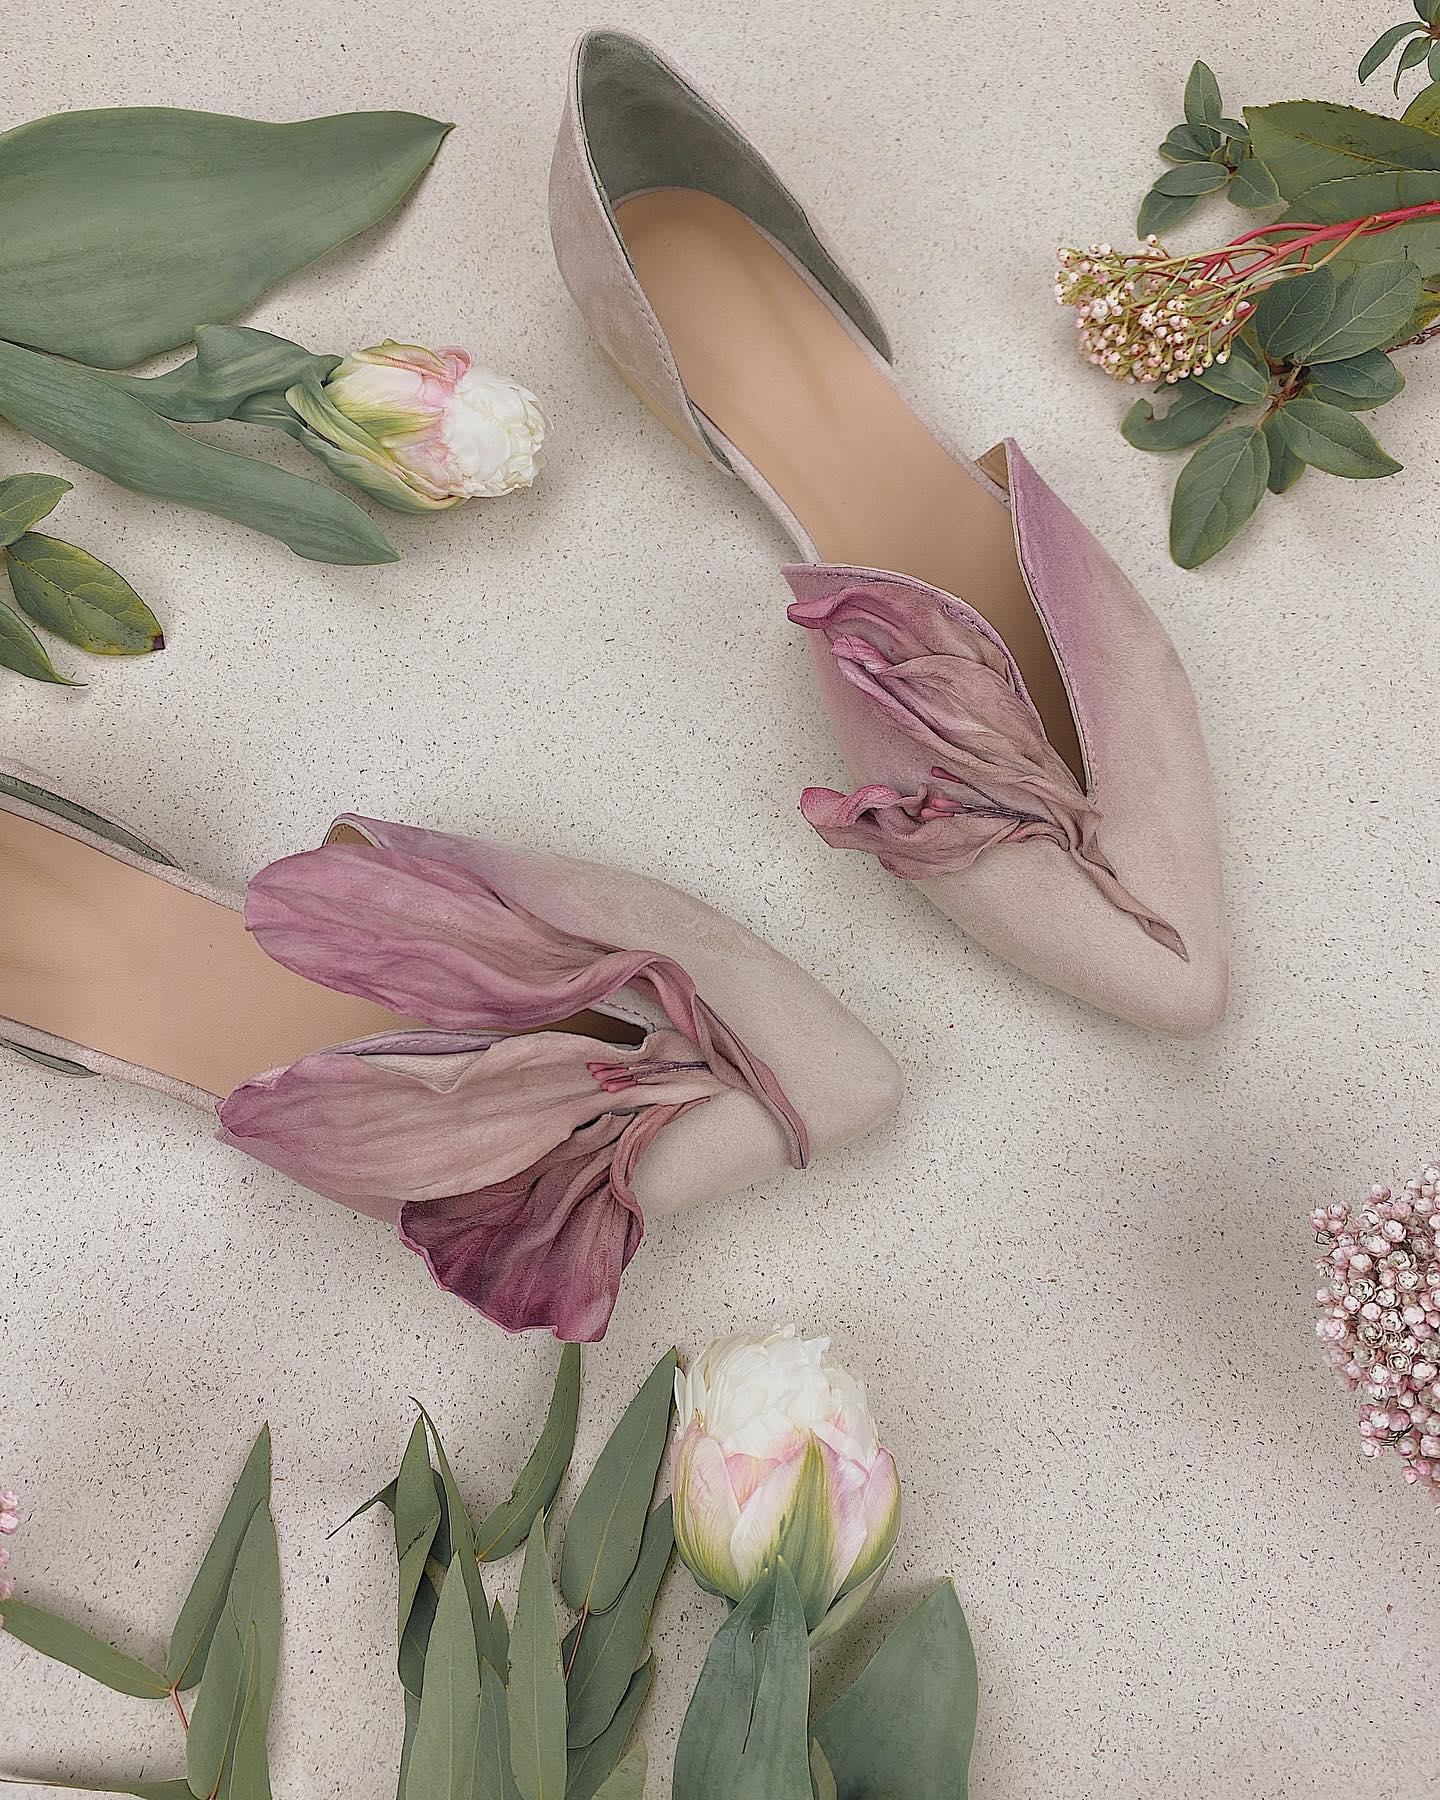 Frivolous Floral Shoes - mark levillen - dark pink shoe